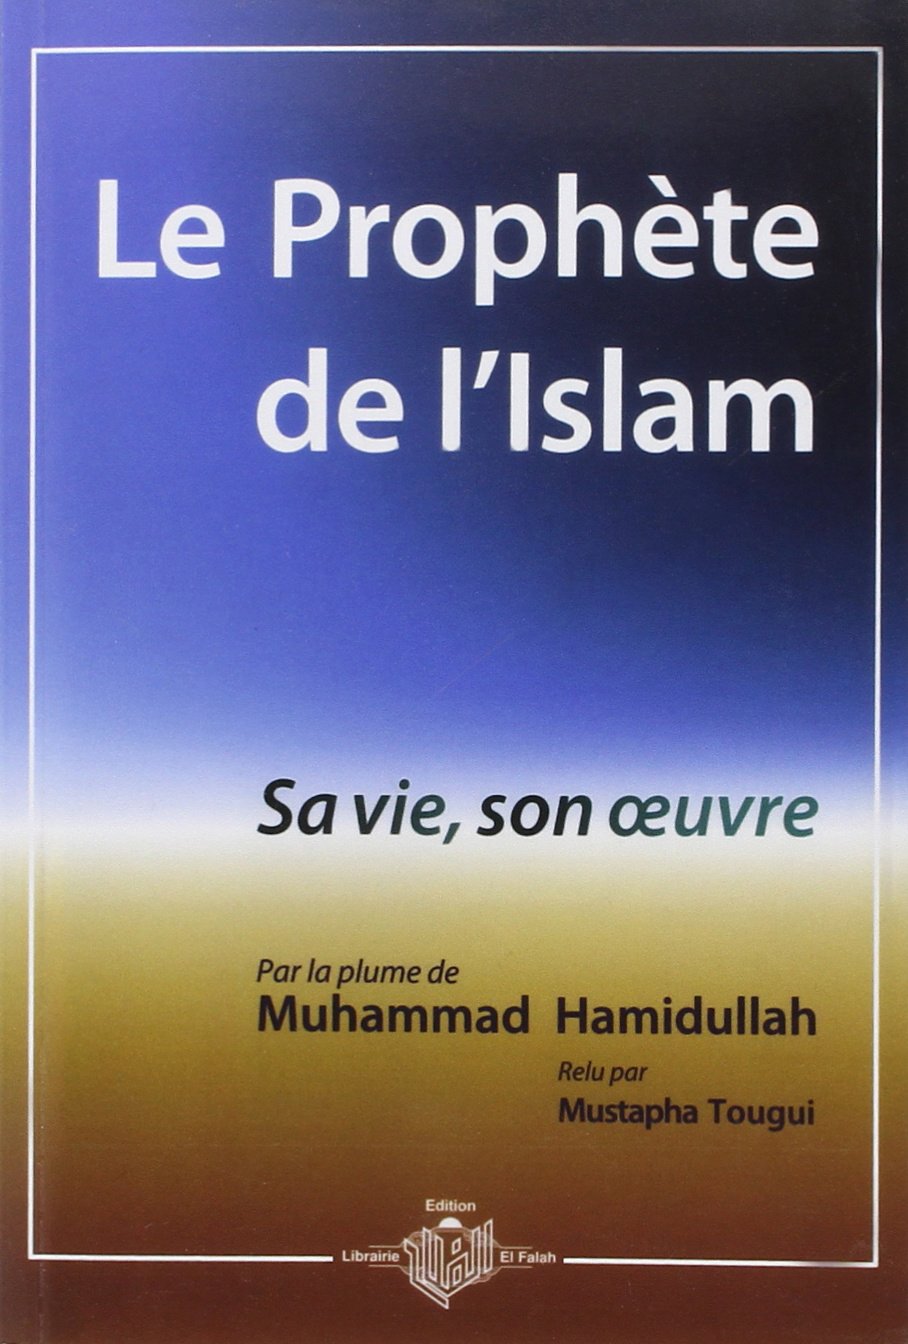 Le Prophète de l'Islam, sa vie, son oeuvre